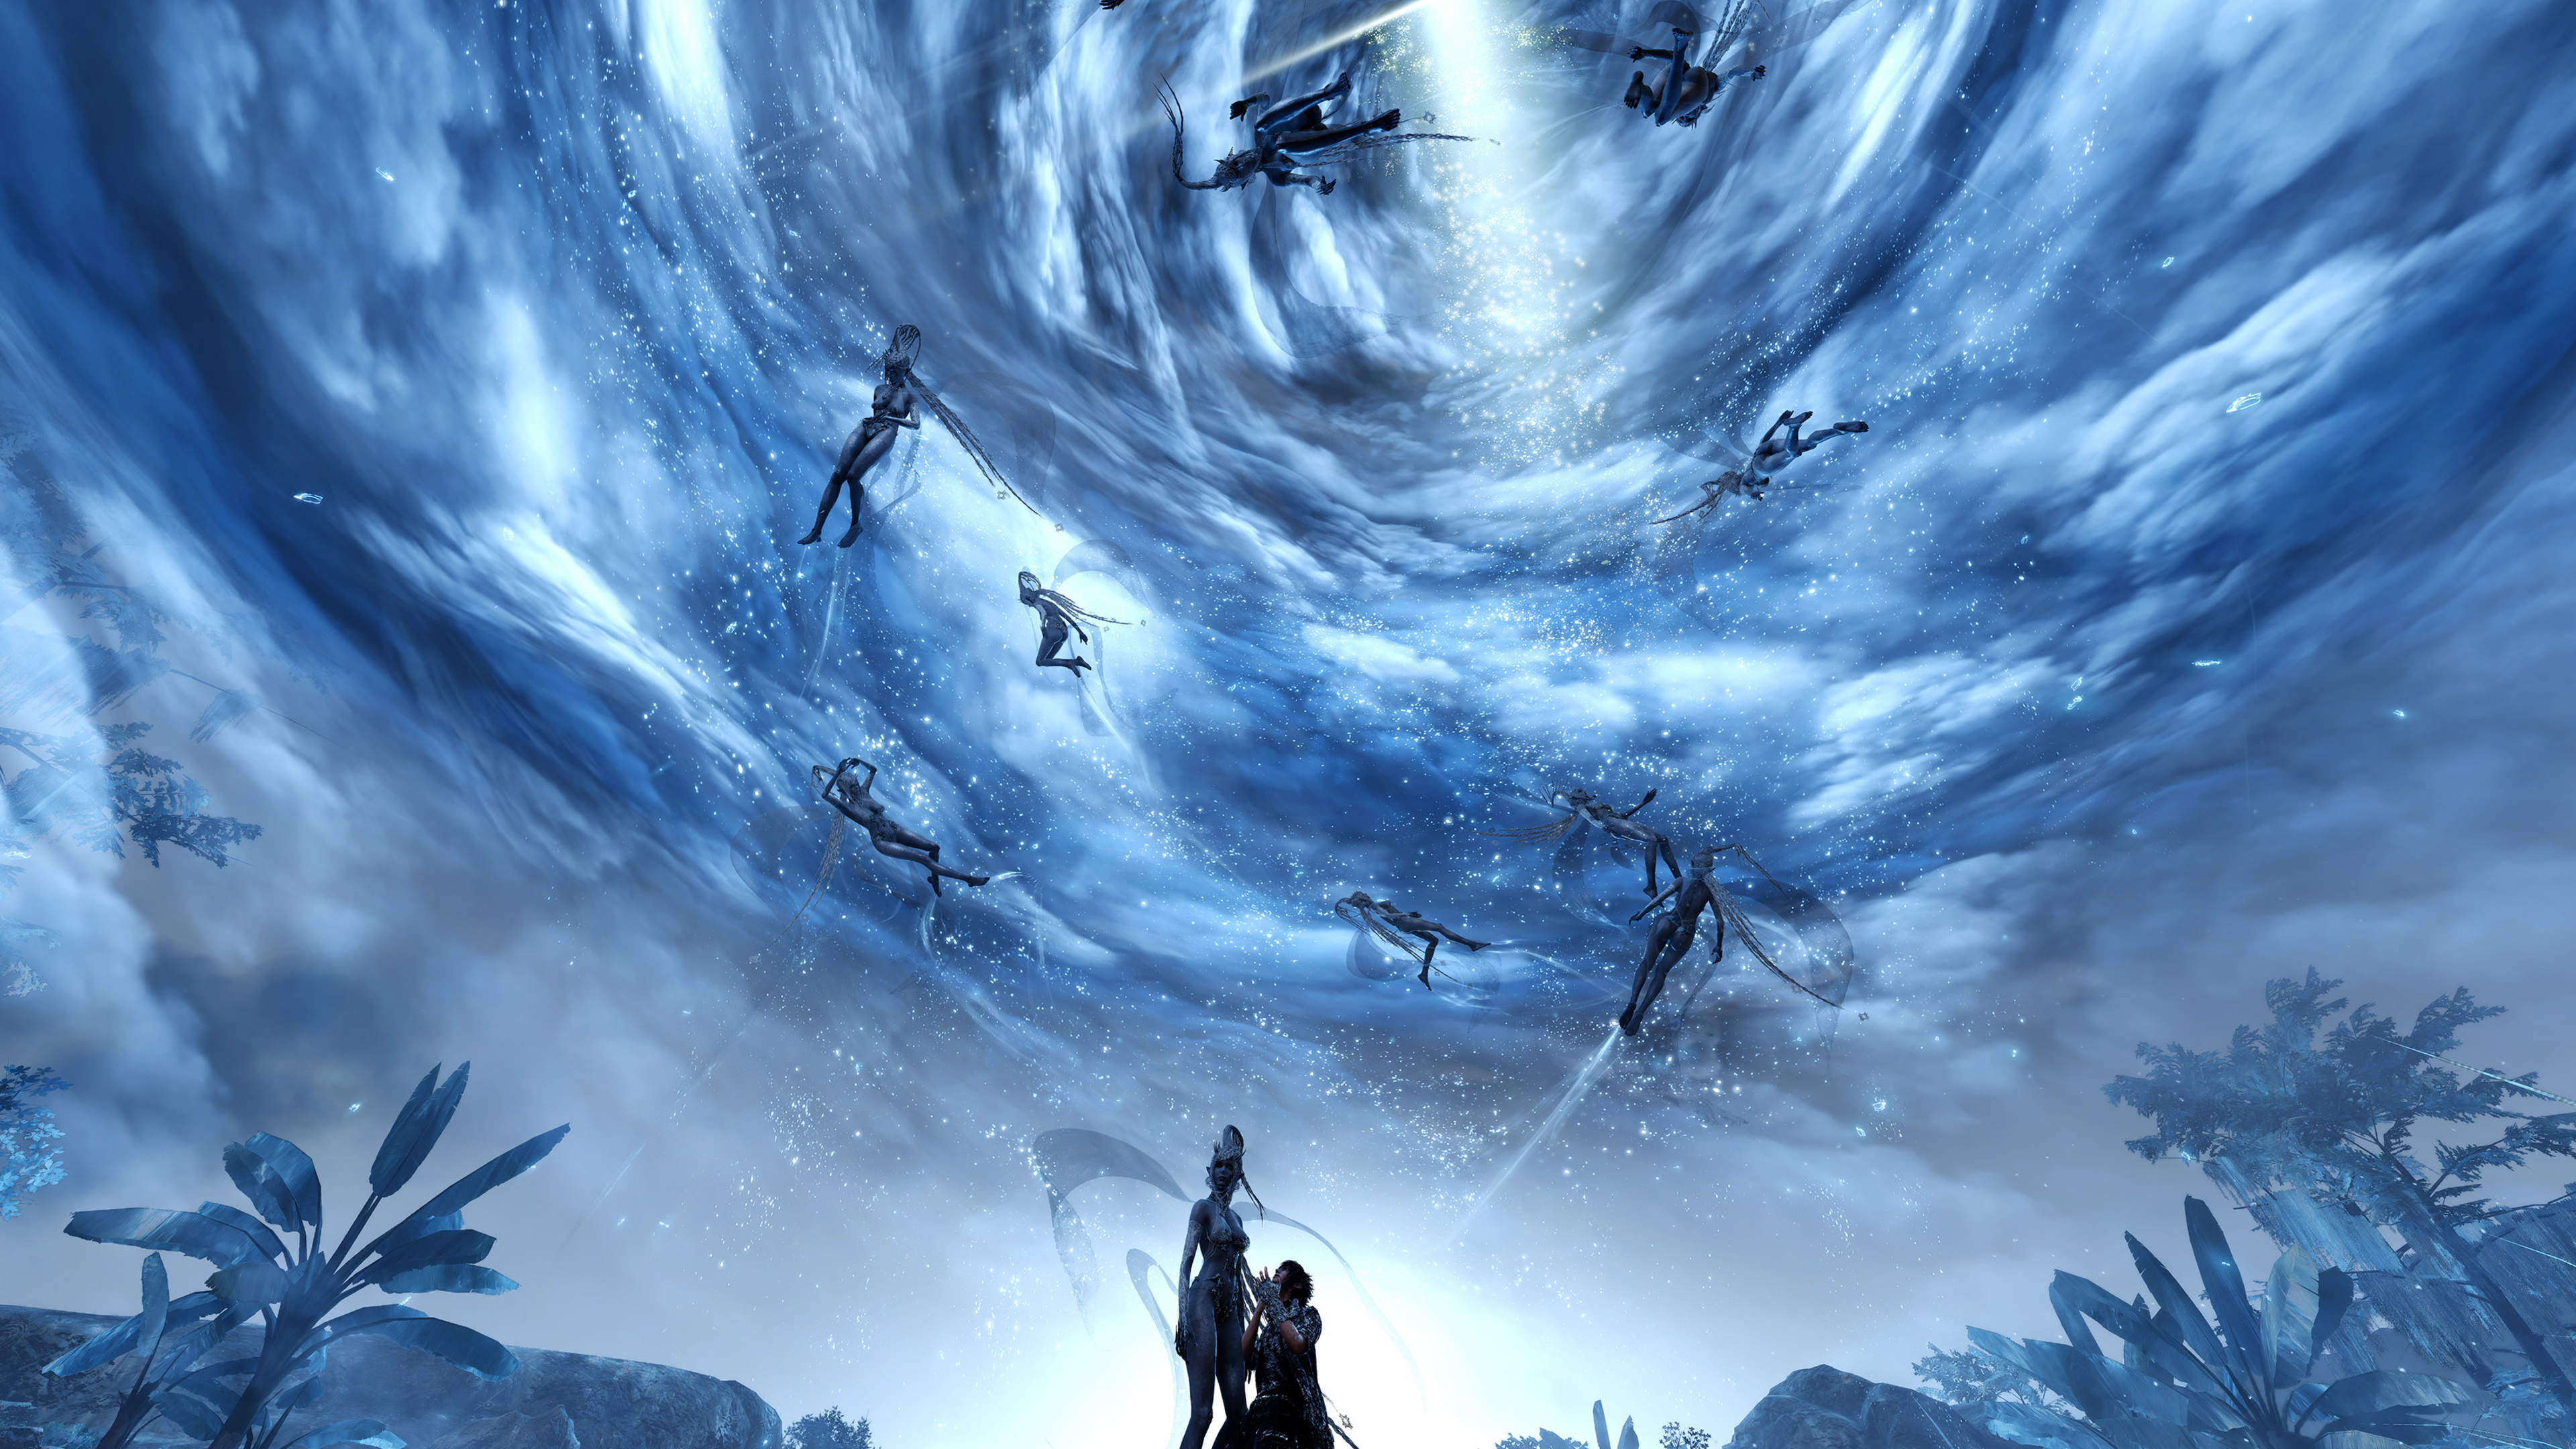 最终幻想xv, 最终幻想VII翻拍, 空间, 天空, 气氛 壁纸 3840x2160 允许